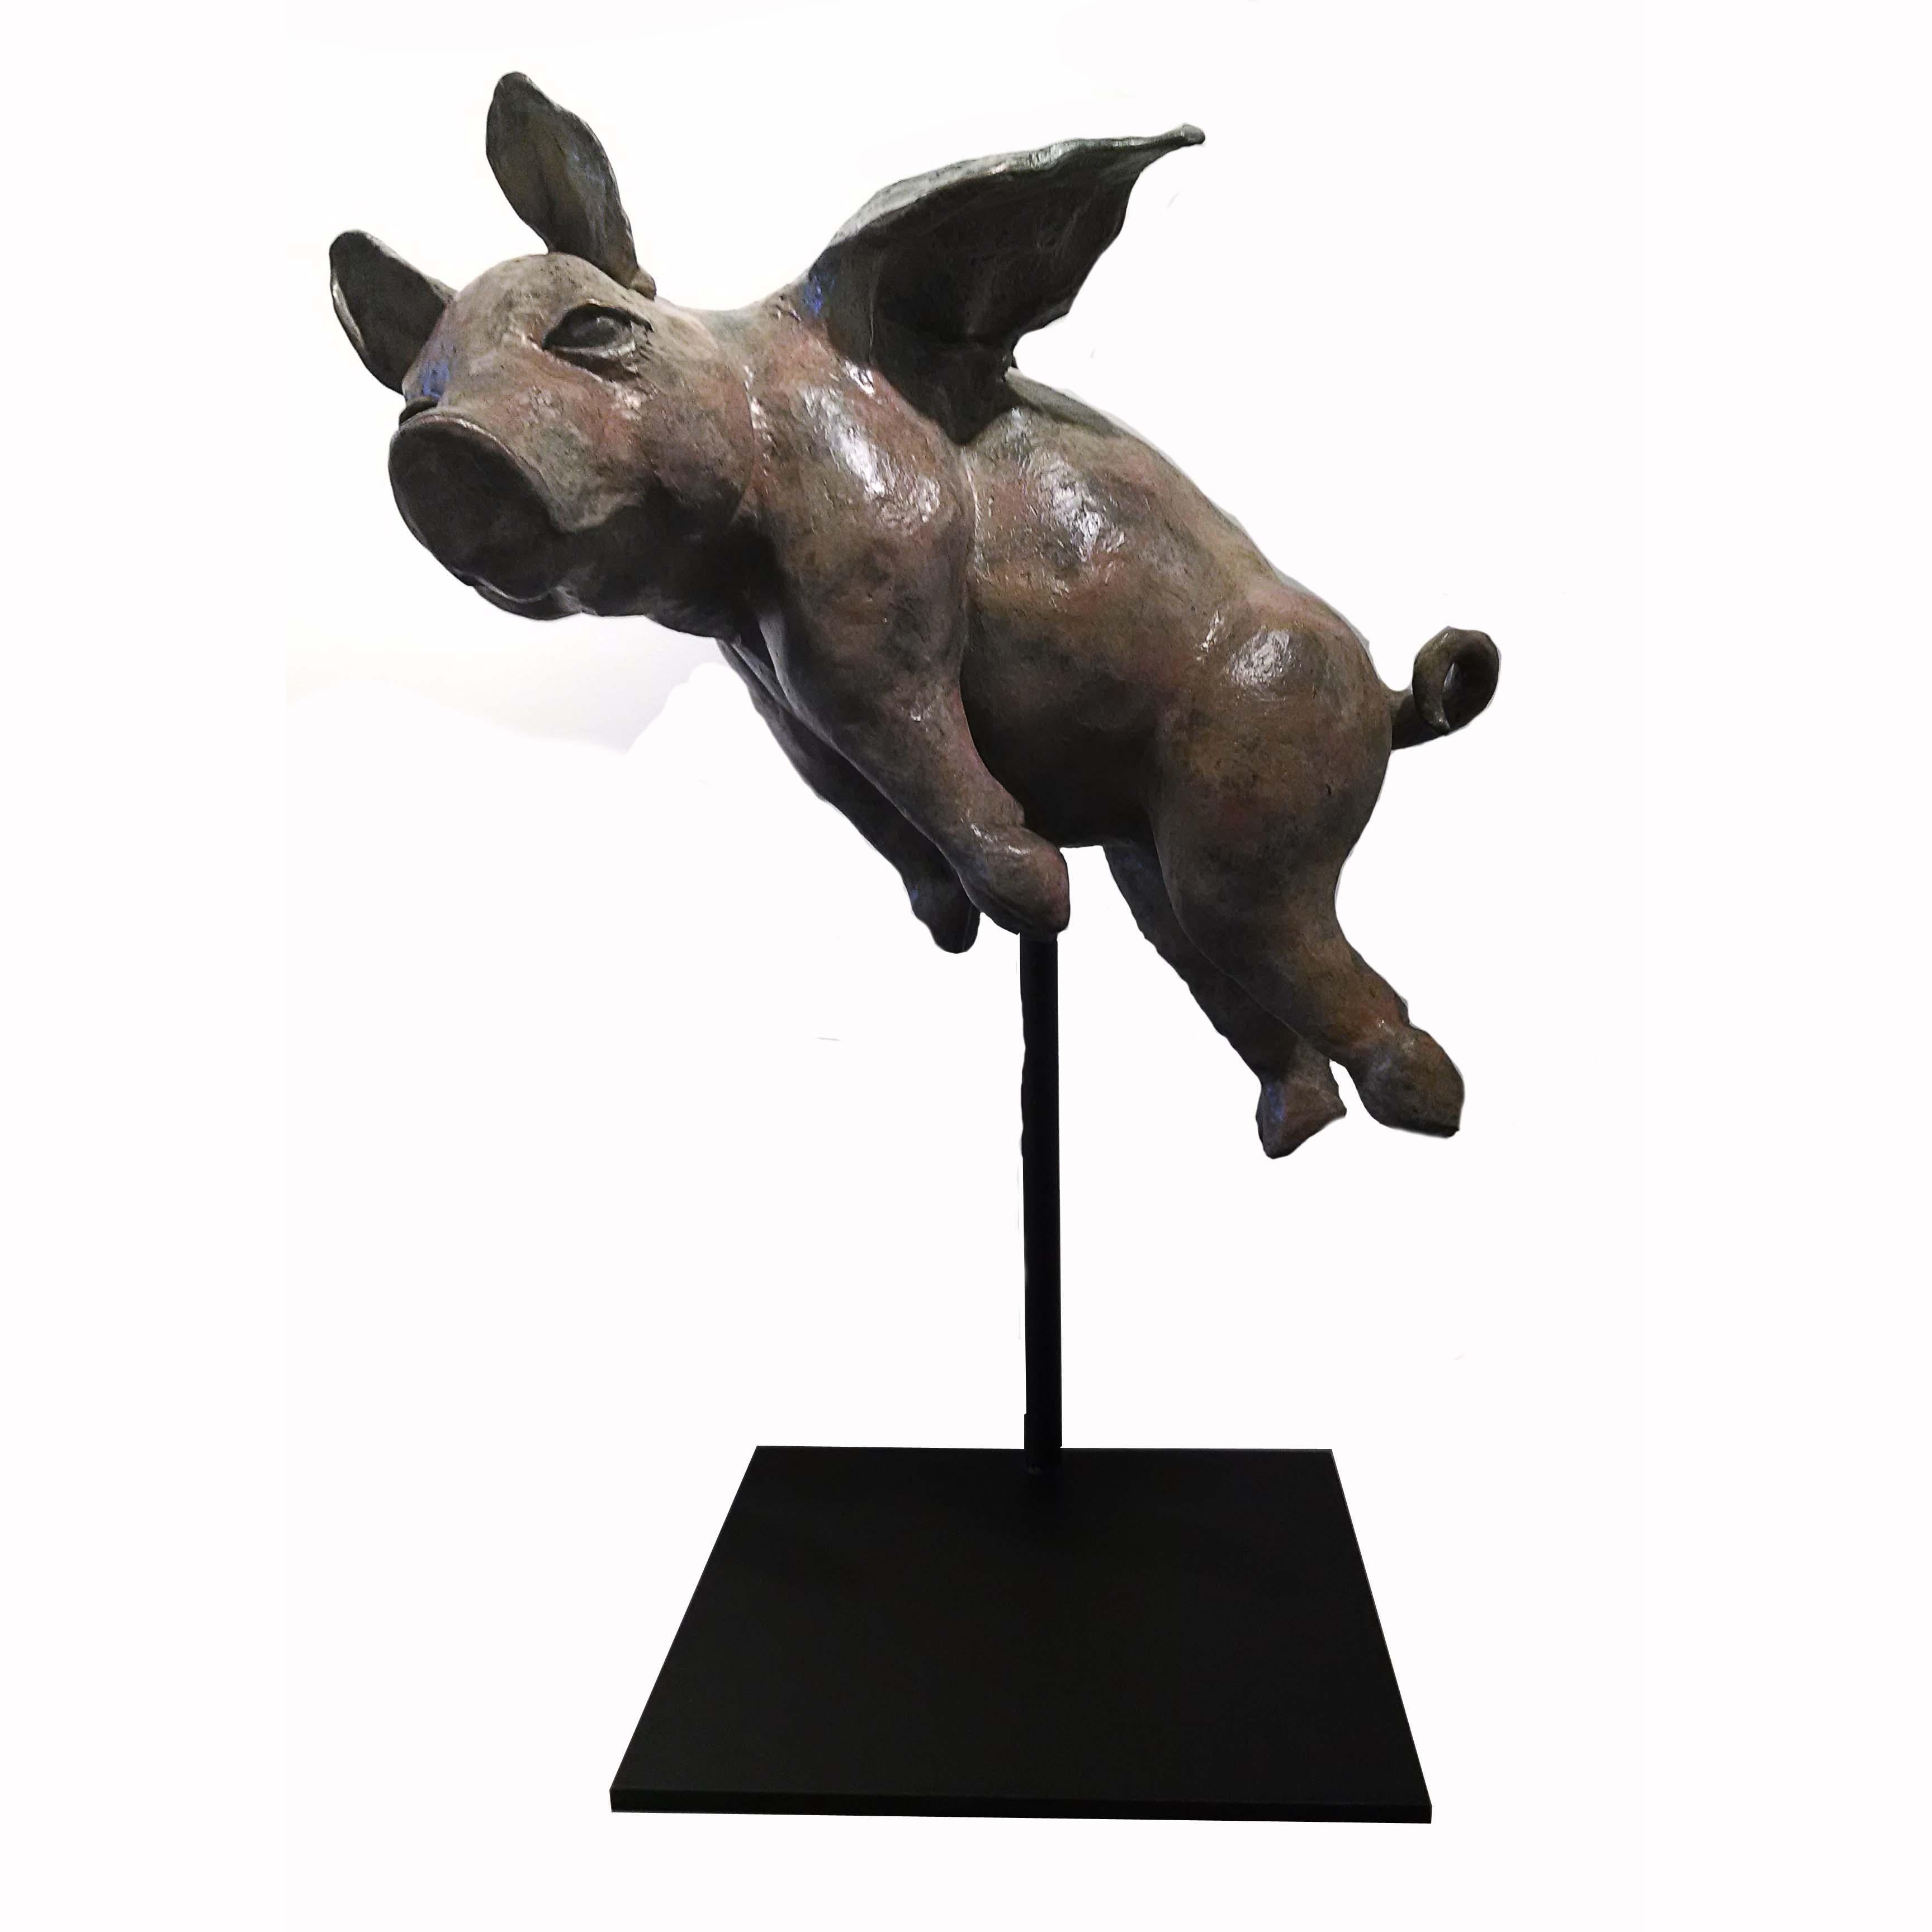 Giuseppe Palumbo Figurative Sculpture - Hog Heaven 47/99